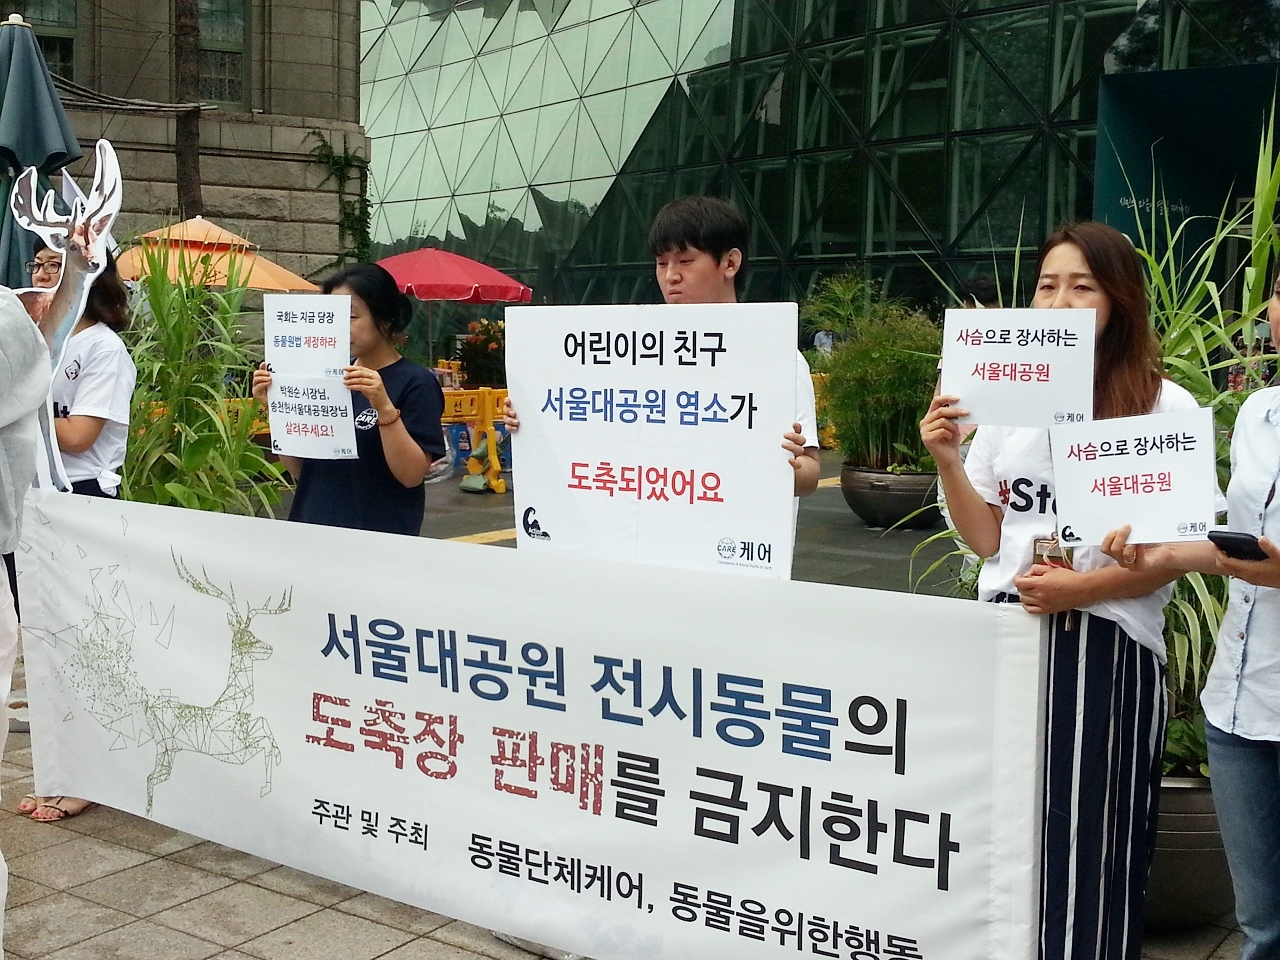 서울대공원 동물원의 전시동물들이 도축농장에 밀반출된 사건과 관련하여, 동물보호단체 '케어'와 '동물을 위한 행동'이 기자회견을 하고 있다.